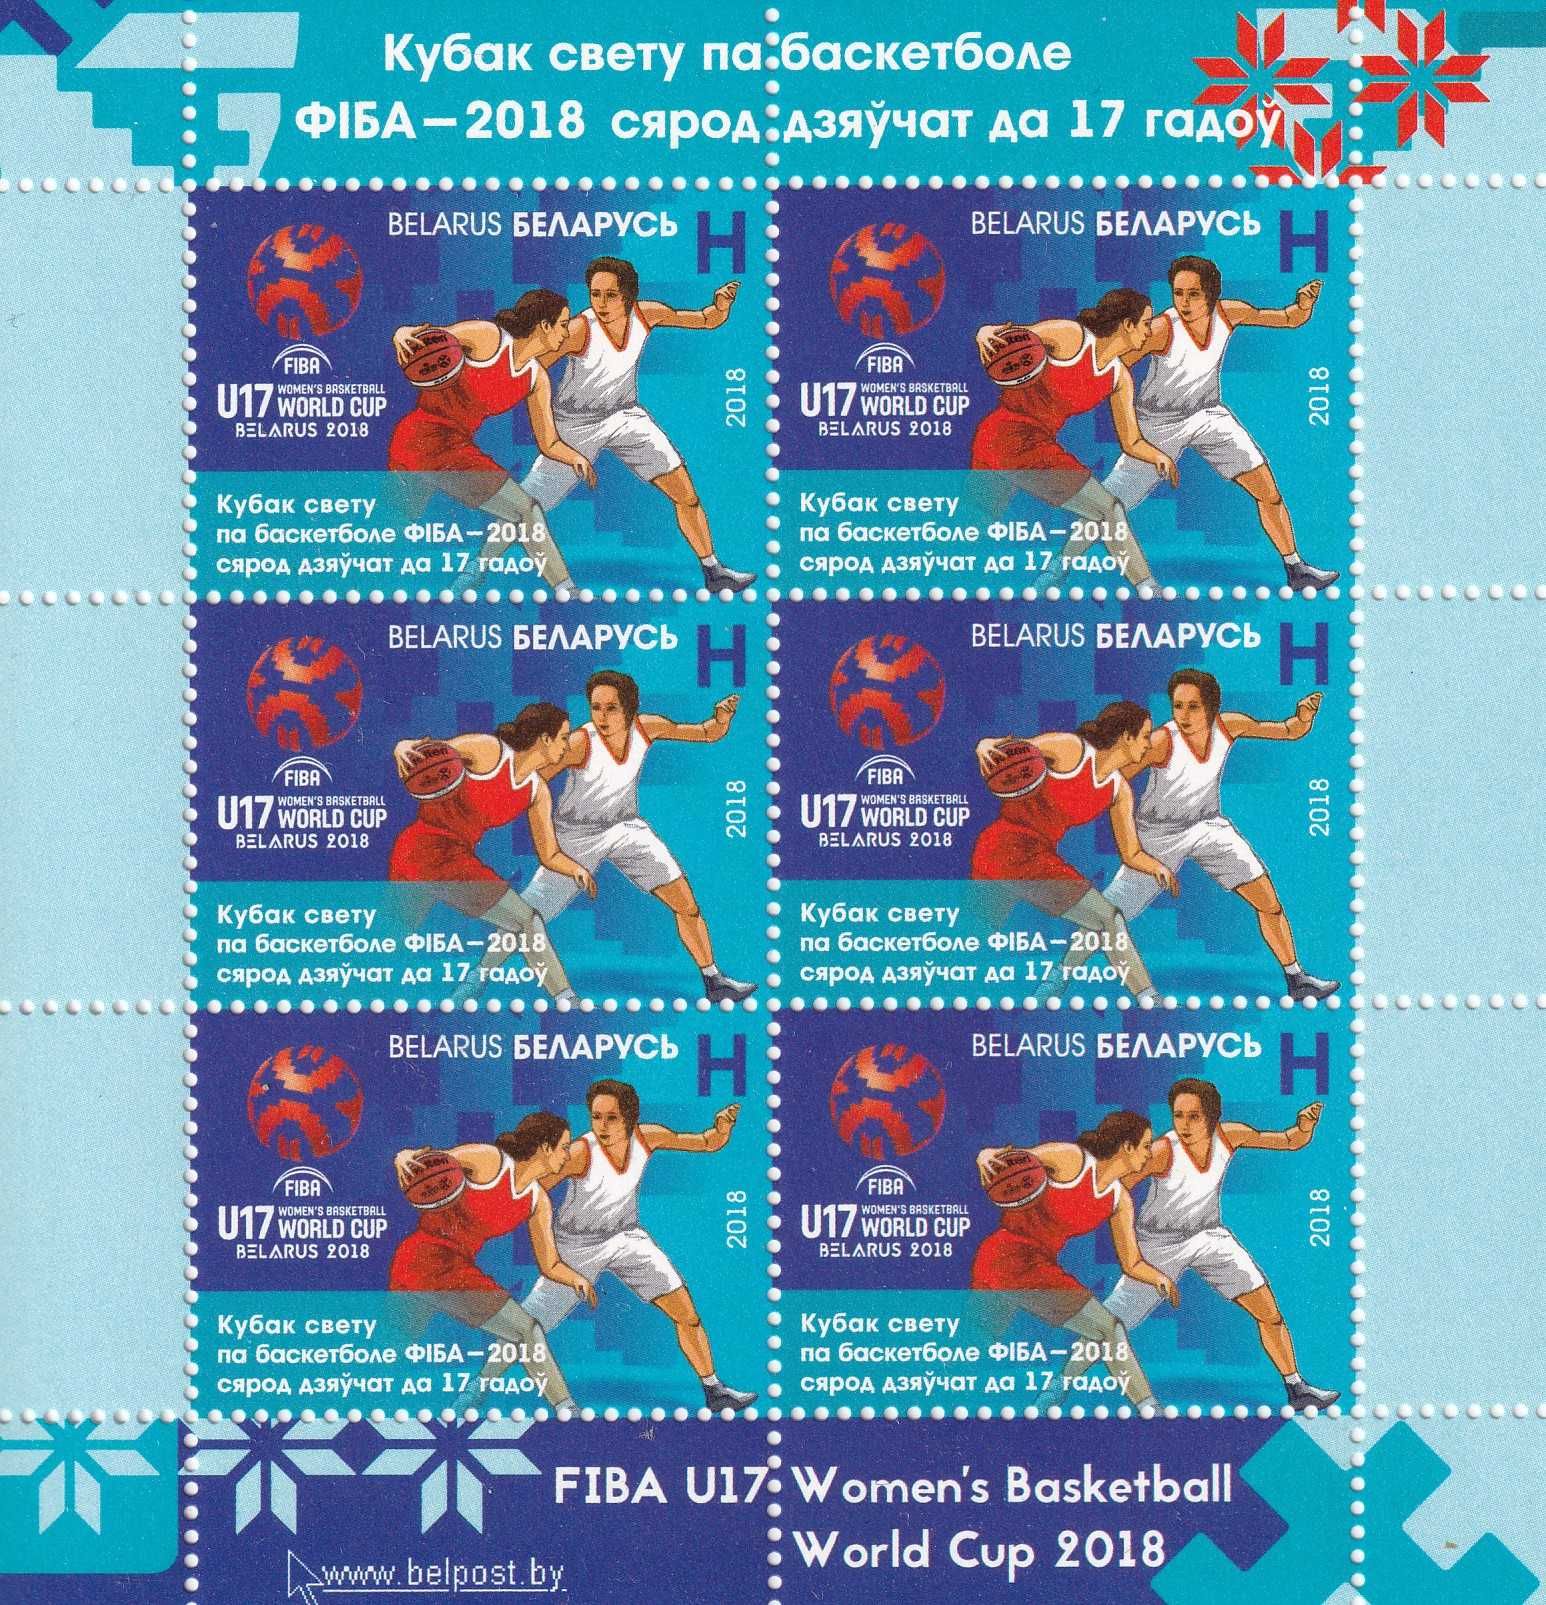 znaczki pocztowe - Białoruś 2020 cena 27,90 zł kat.12€ - sport